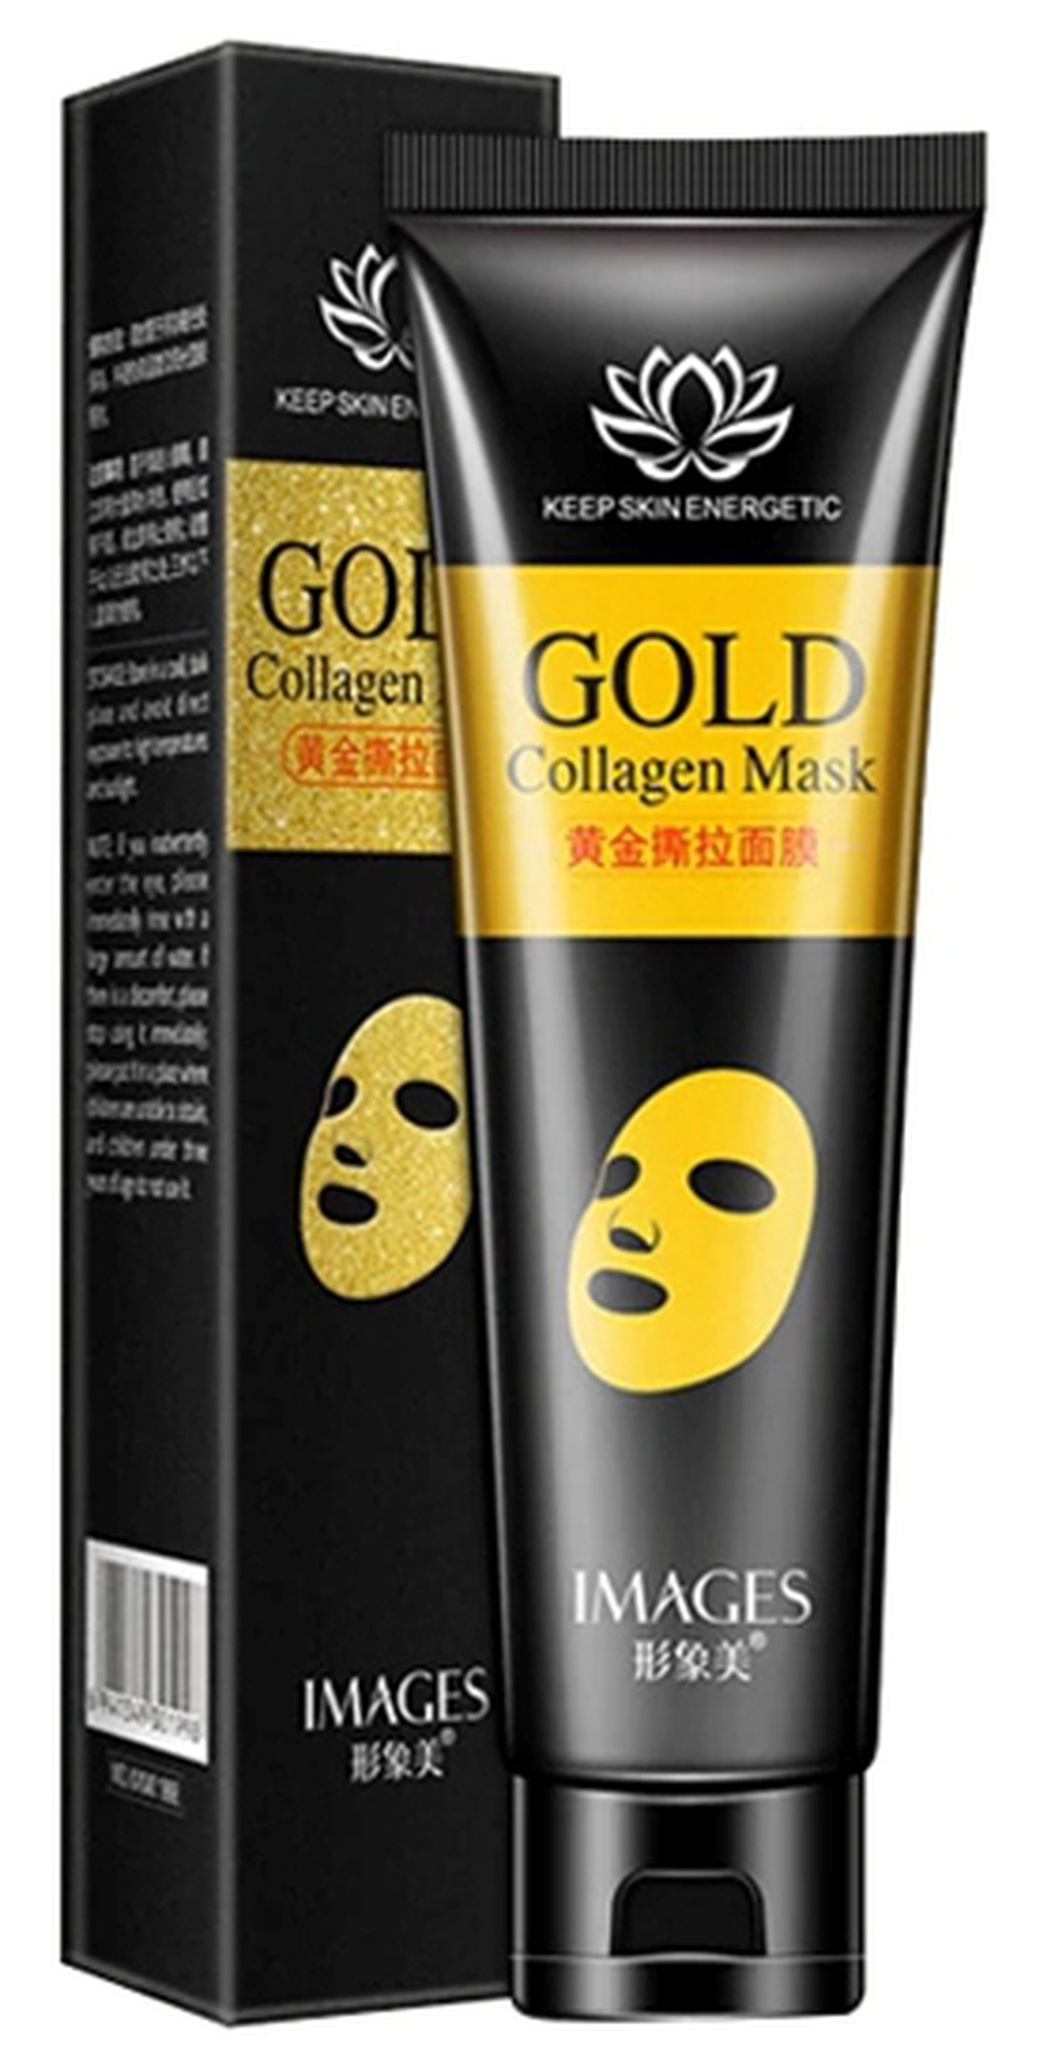 Увлажняющая золотая маска-пленка Images с коллагеном фото